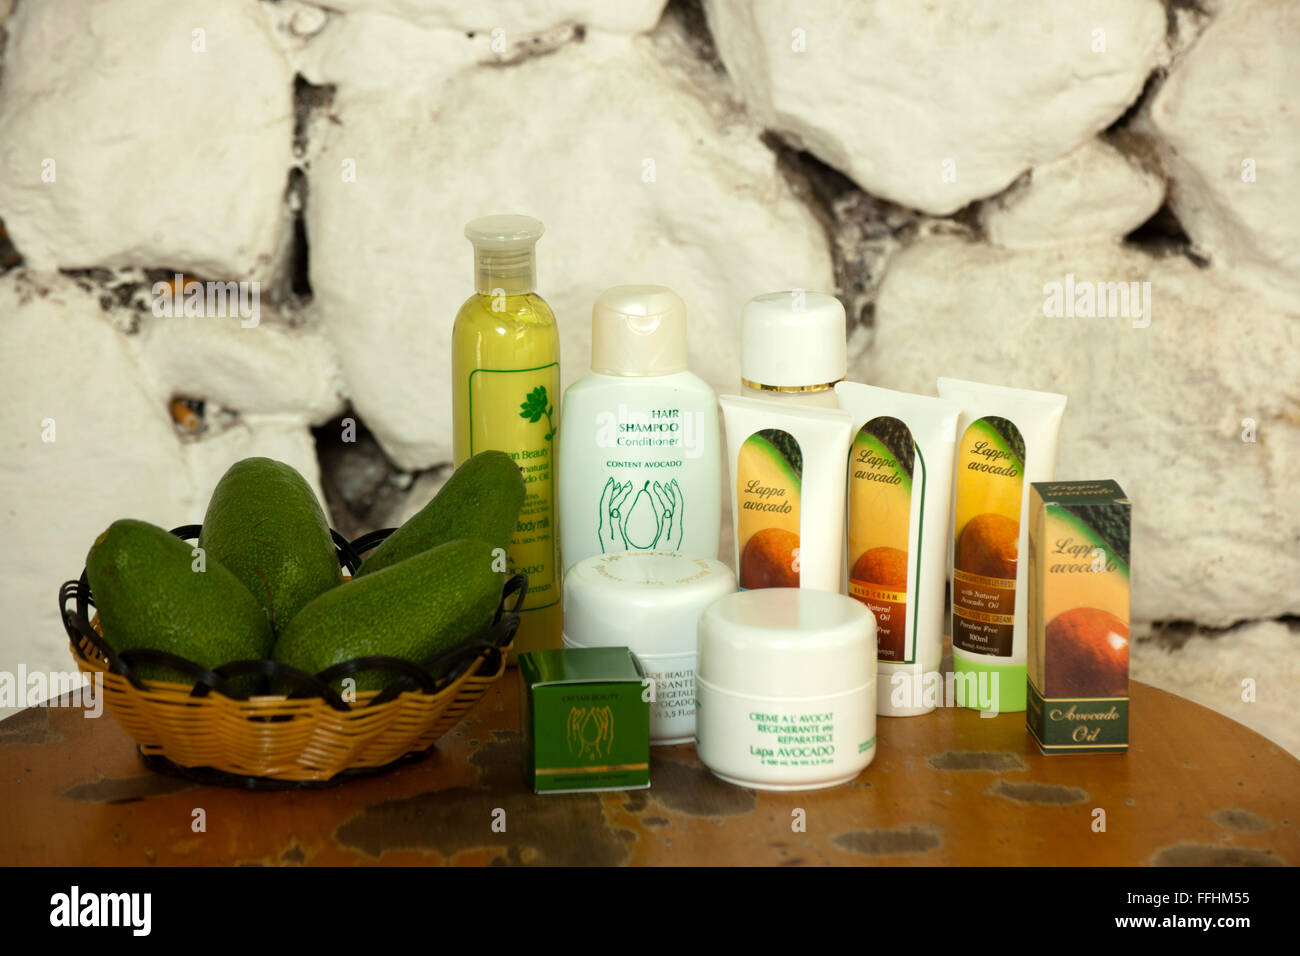 Griechenland, Kreta, Argiroupolis, Lappa Avocado Kosmetikprodukte verkauft aus Avocado die selbst angebaut werden. Foto Stock